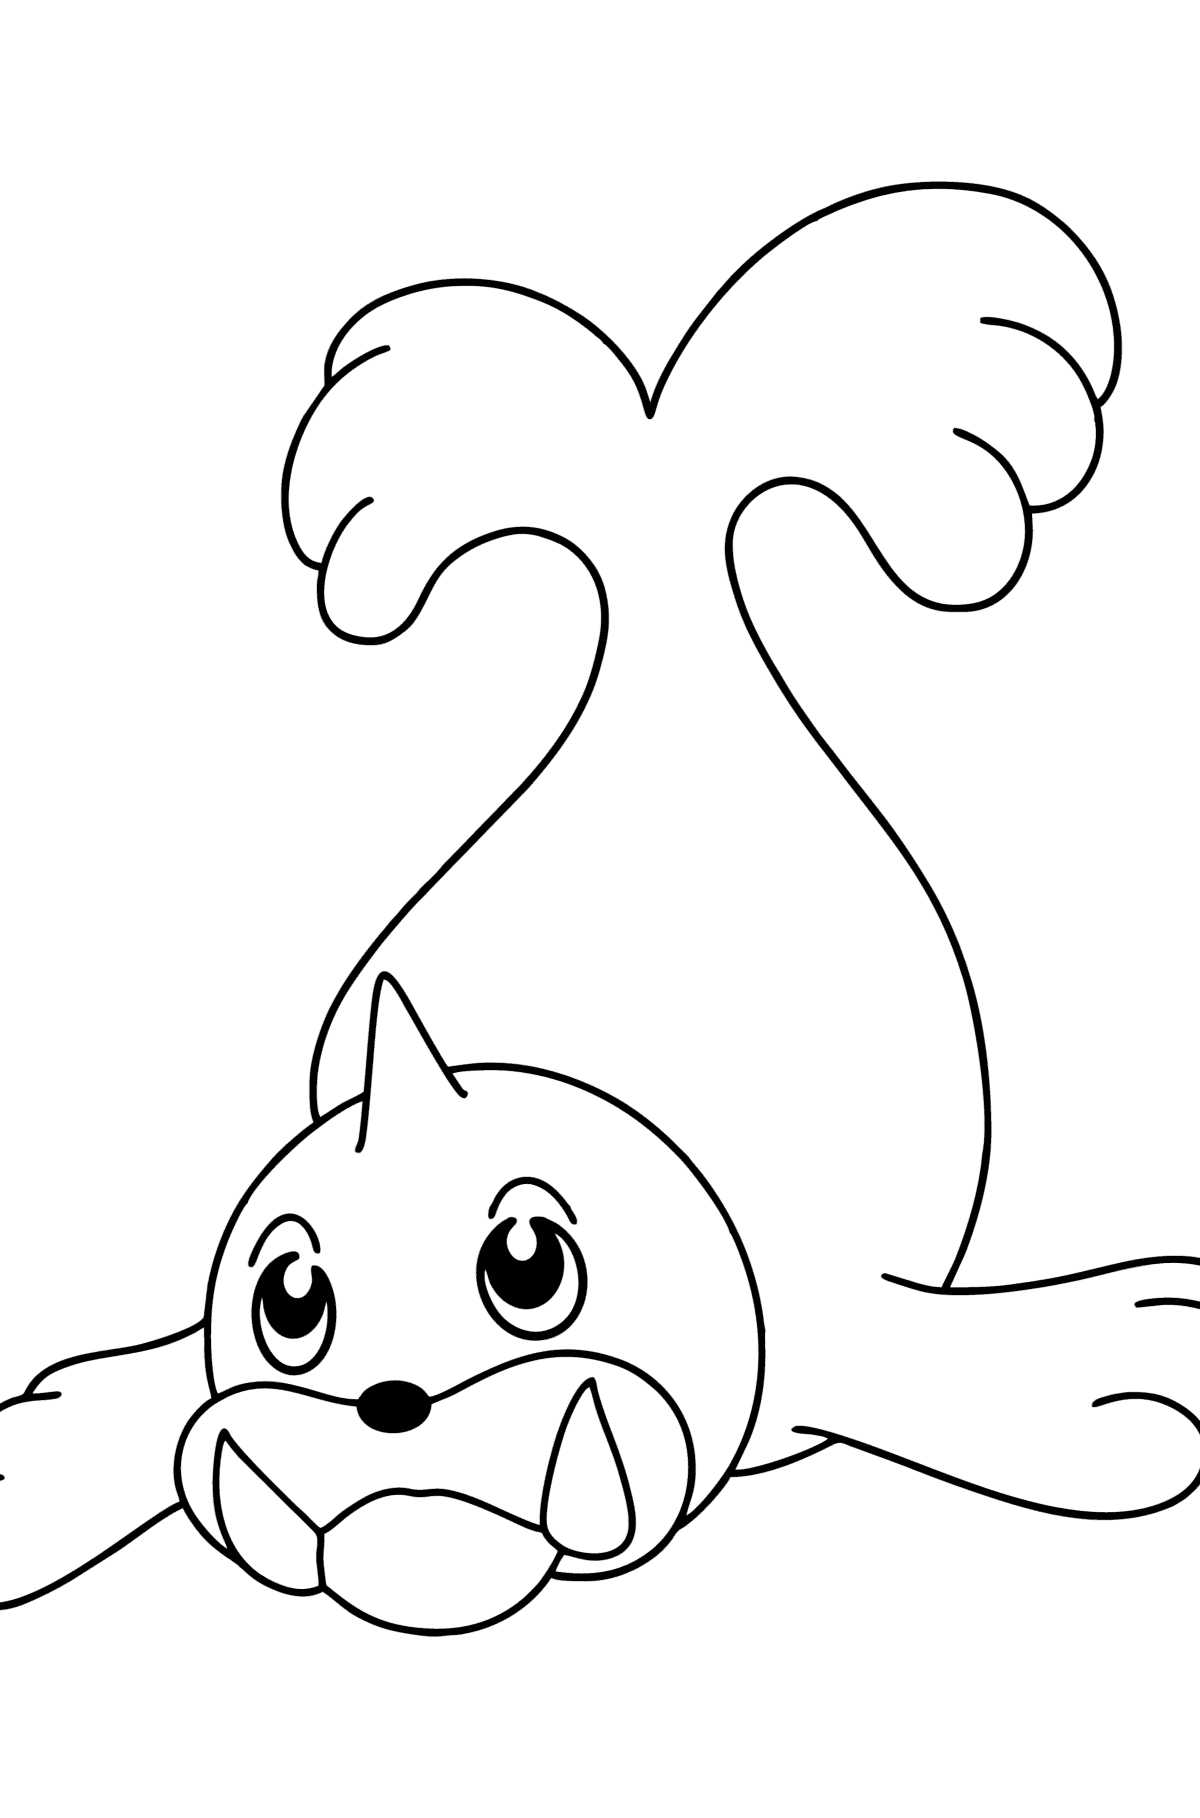 Раскраска Pokemon Go Seel - Картинки для Детей